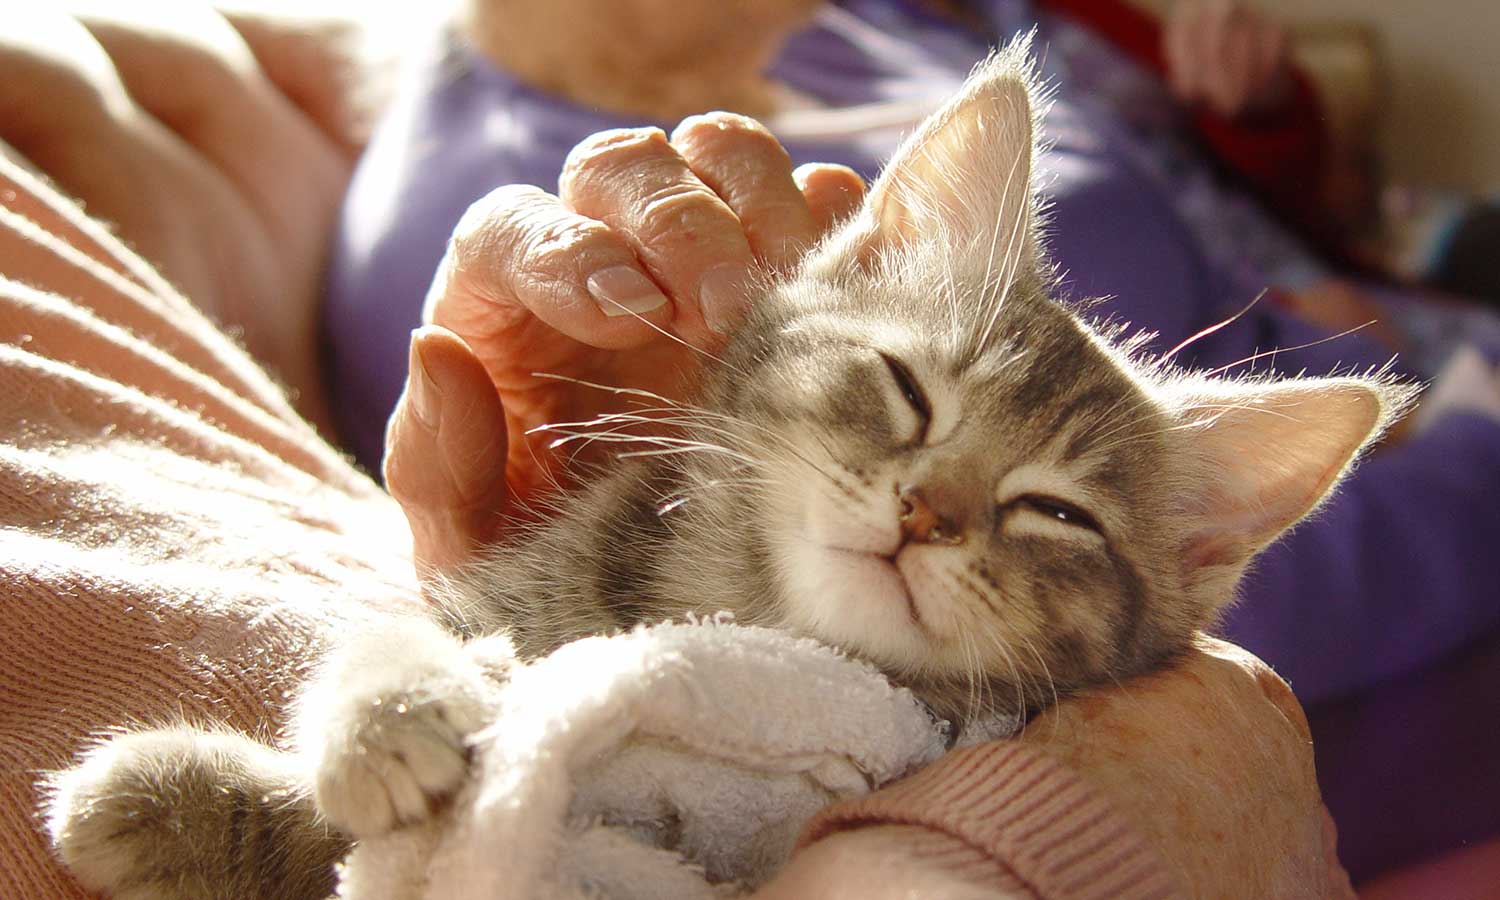 Kitten being held